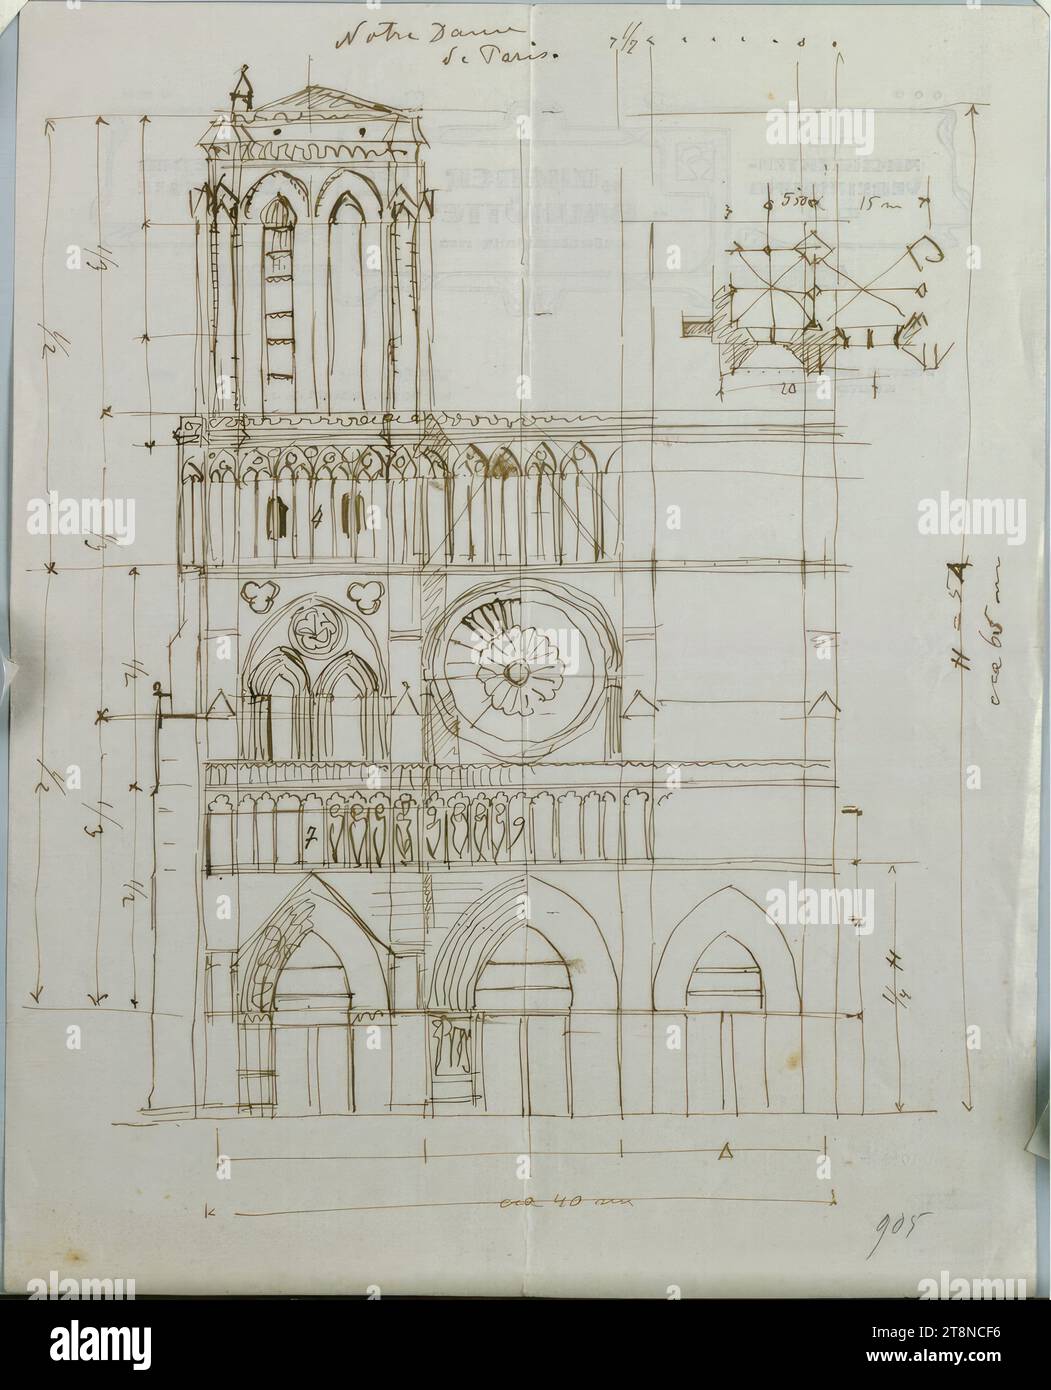 Parigi, Cattedrale di Notre Dame, facciata ovest, piano parziale, altezza, 1905, disegno architettonico, carta, peso medio; disegno penna (marrone), 29,2 x 23,2 cm Foto Stock